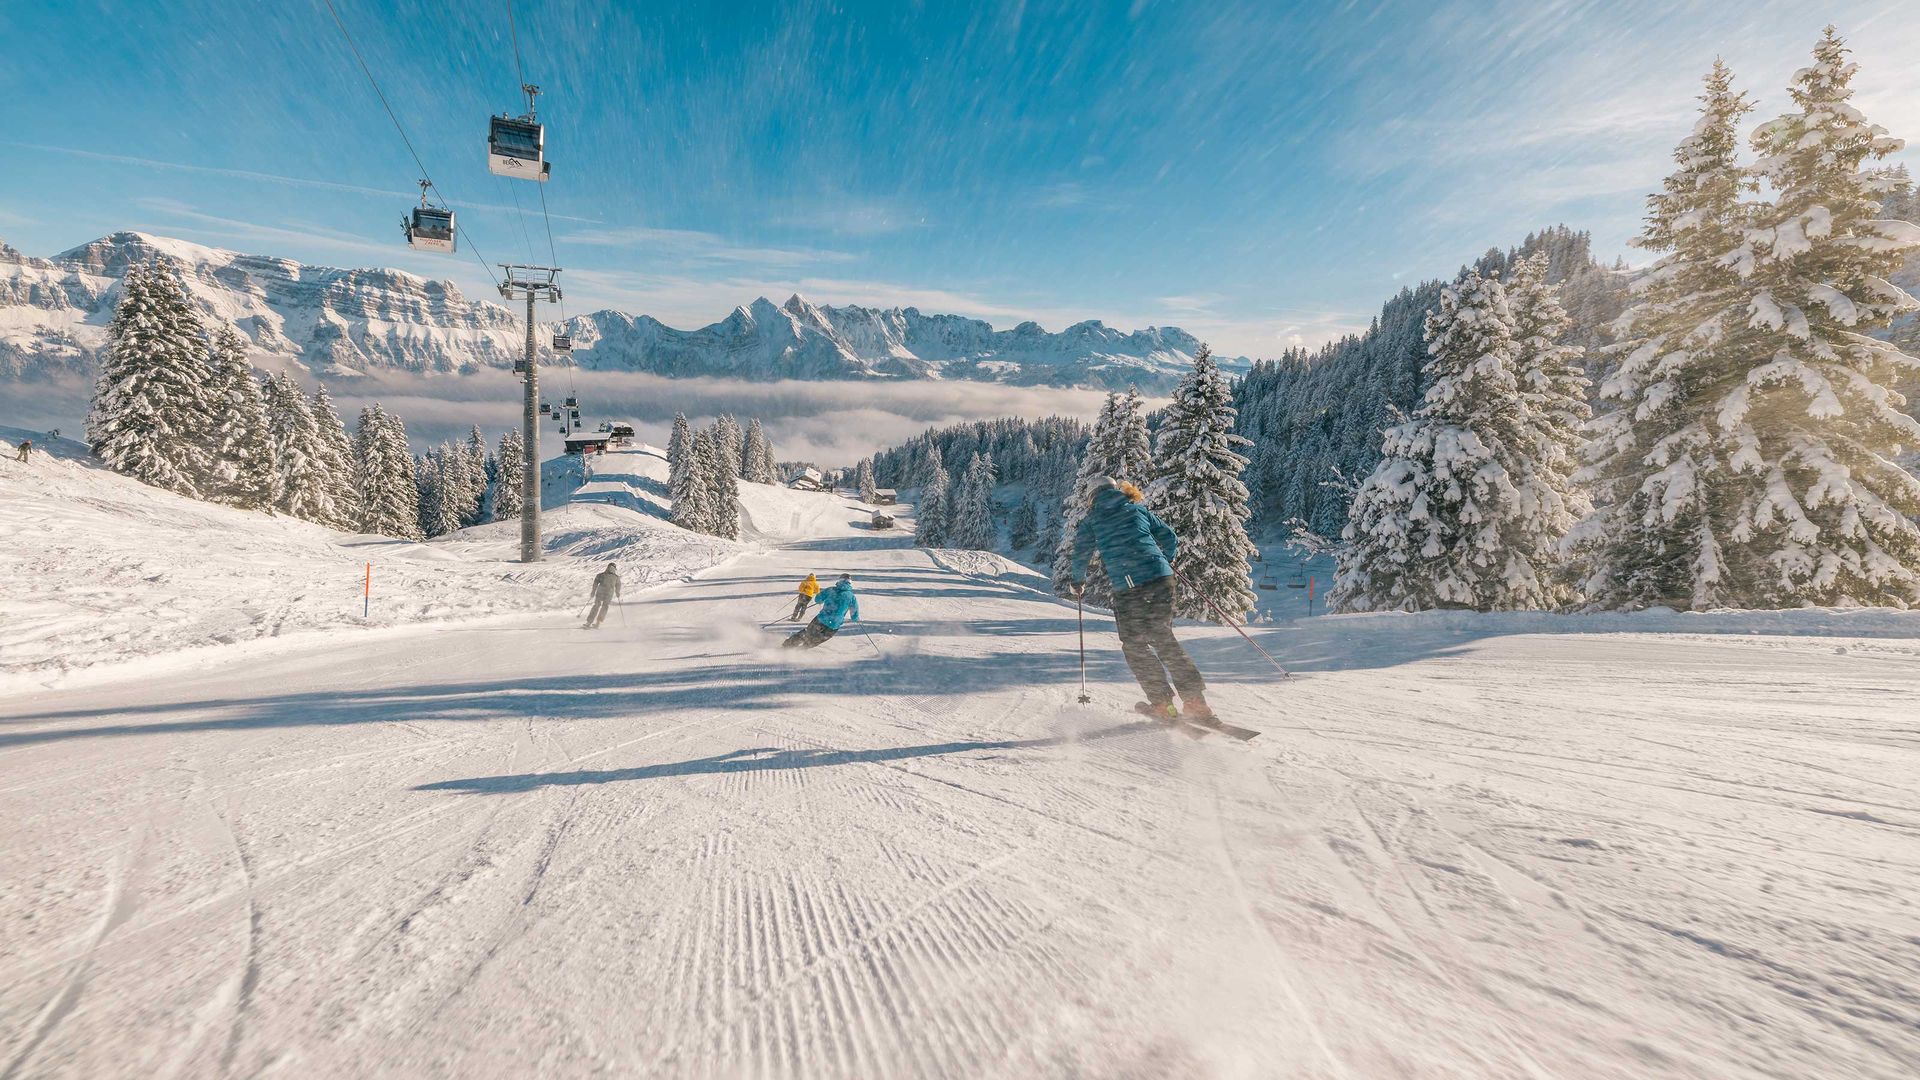 L'immagine mostra un gruppo di sciatori che scendono lungo una pista in un bellissimo inverno soleggiato.